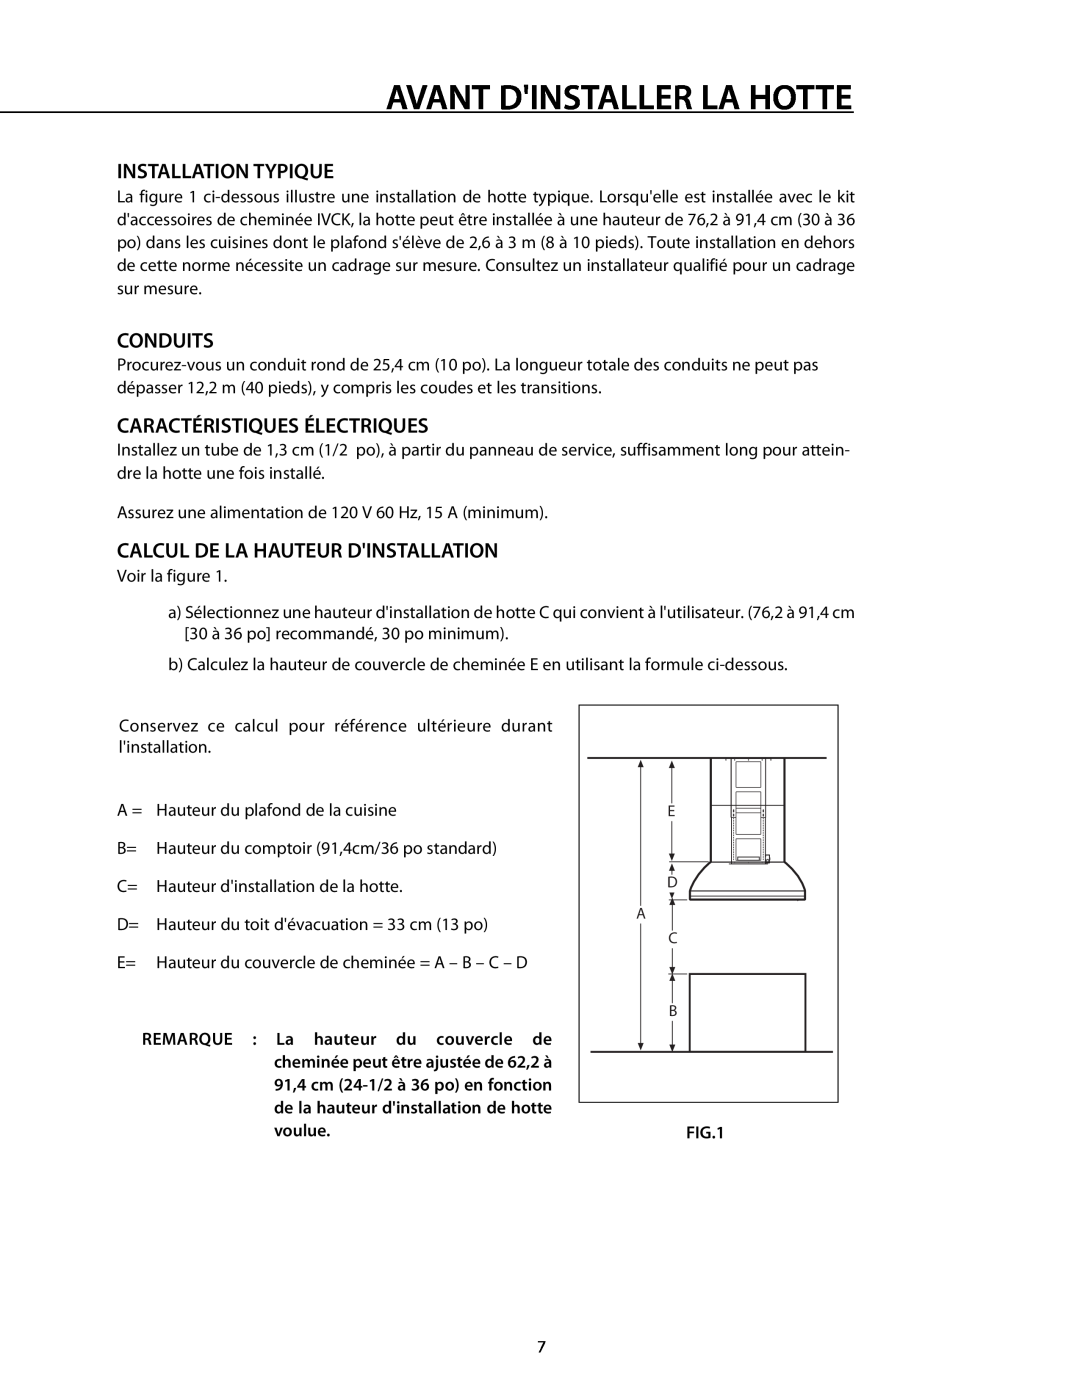 DCS 221712 manual Installation Typique, Conduits, Caractéristiques Électriques, Calcul De La Hauteur Dinstallation 